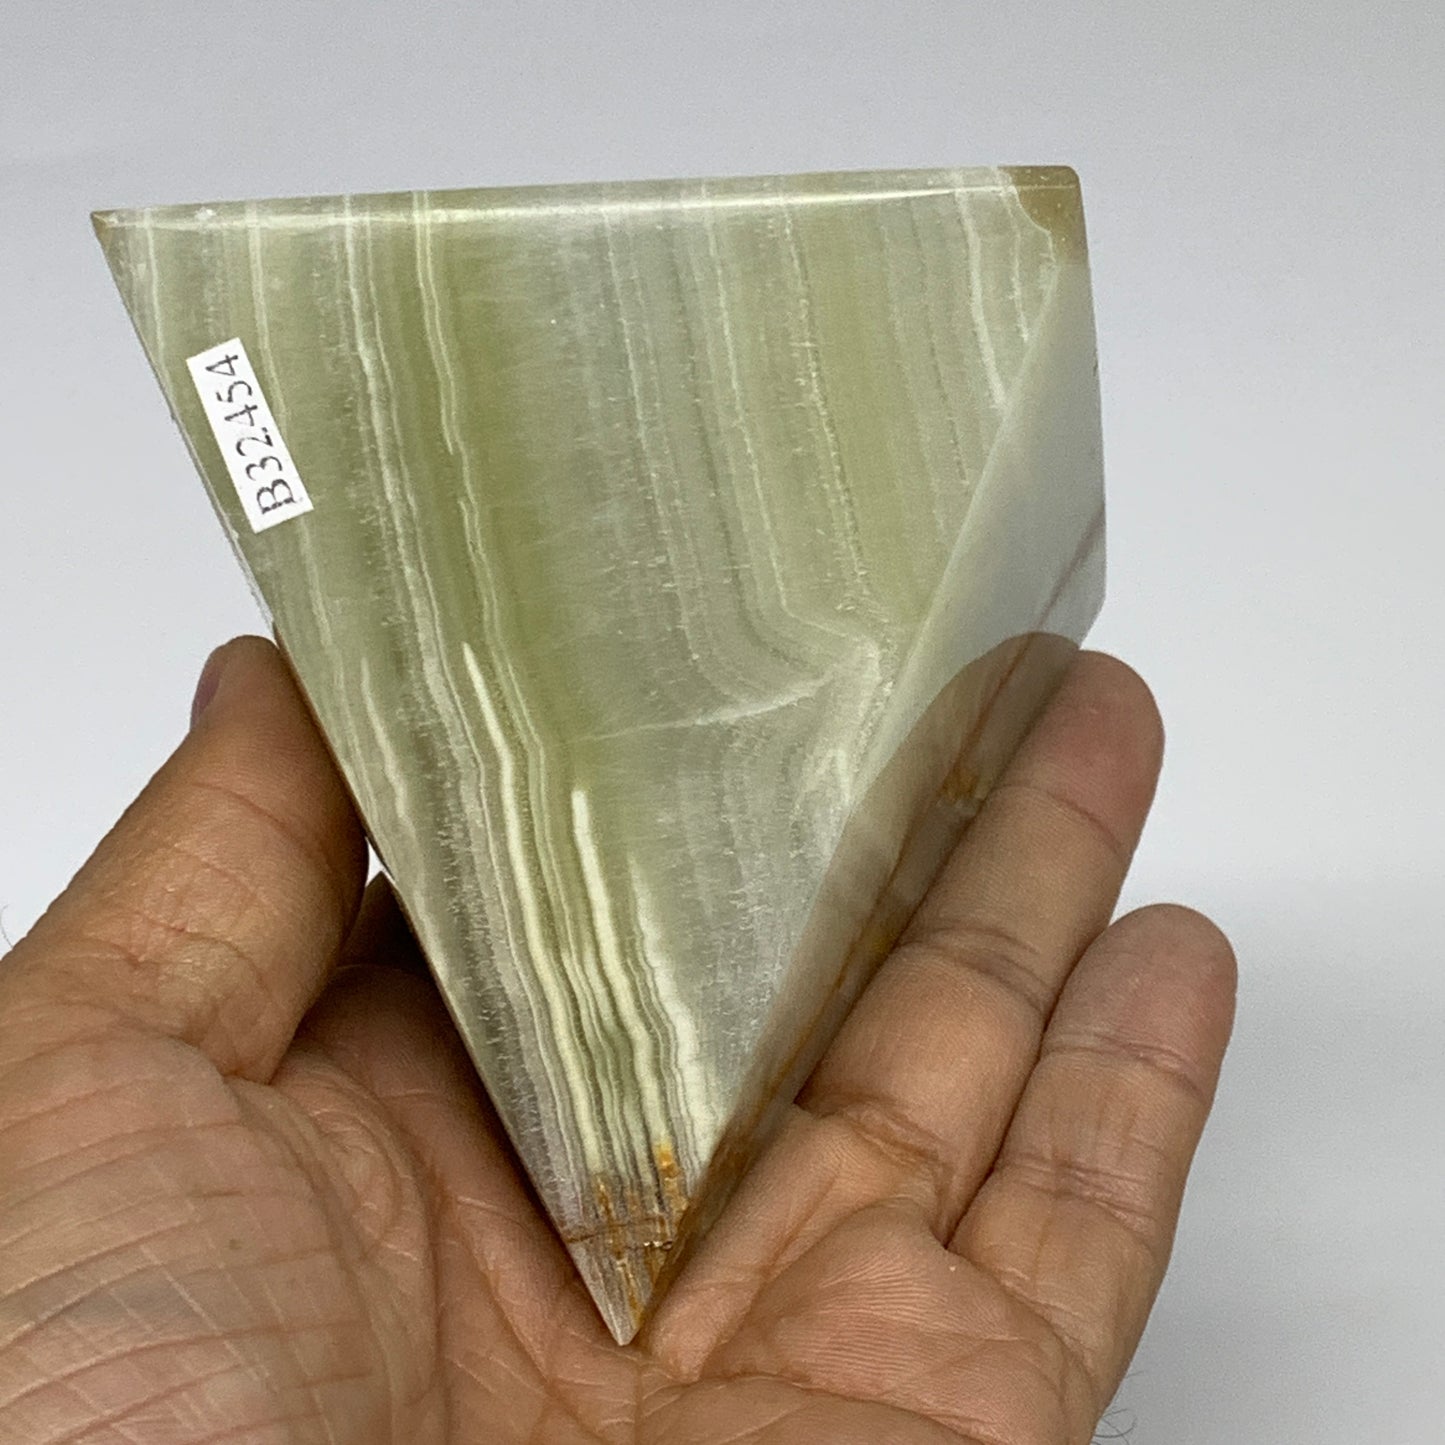 0.92 lbs, 3"x2.9"x2.9", Green Onyx Pyramid Gemstone Crystal, B32454